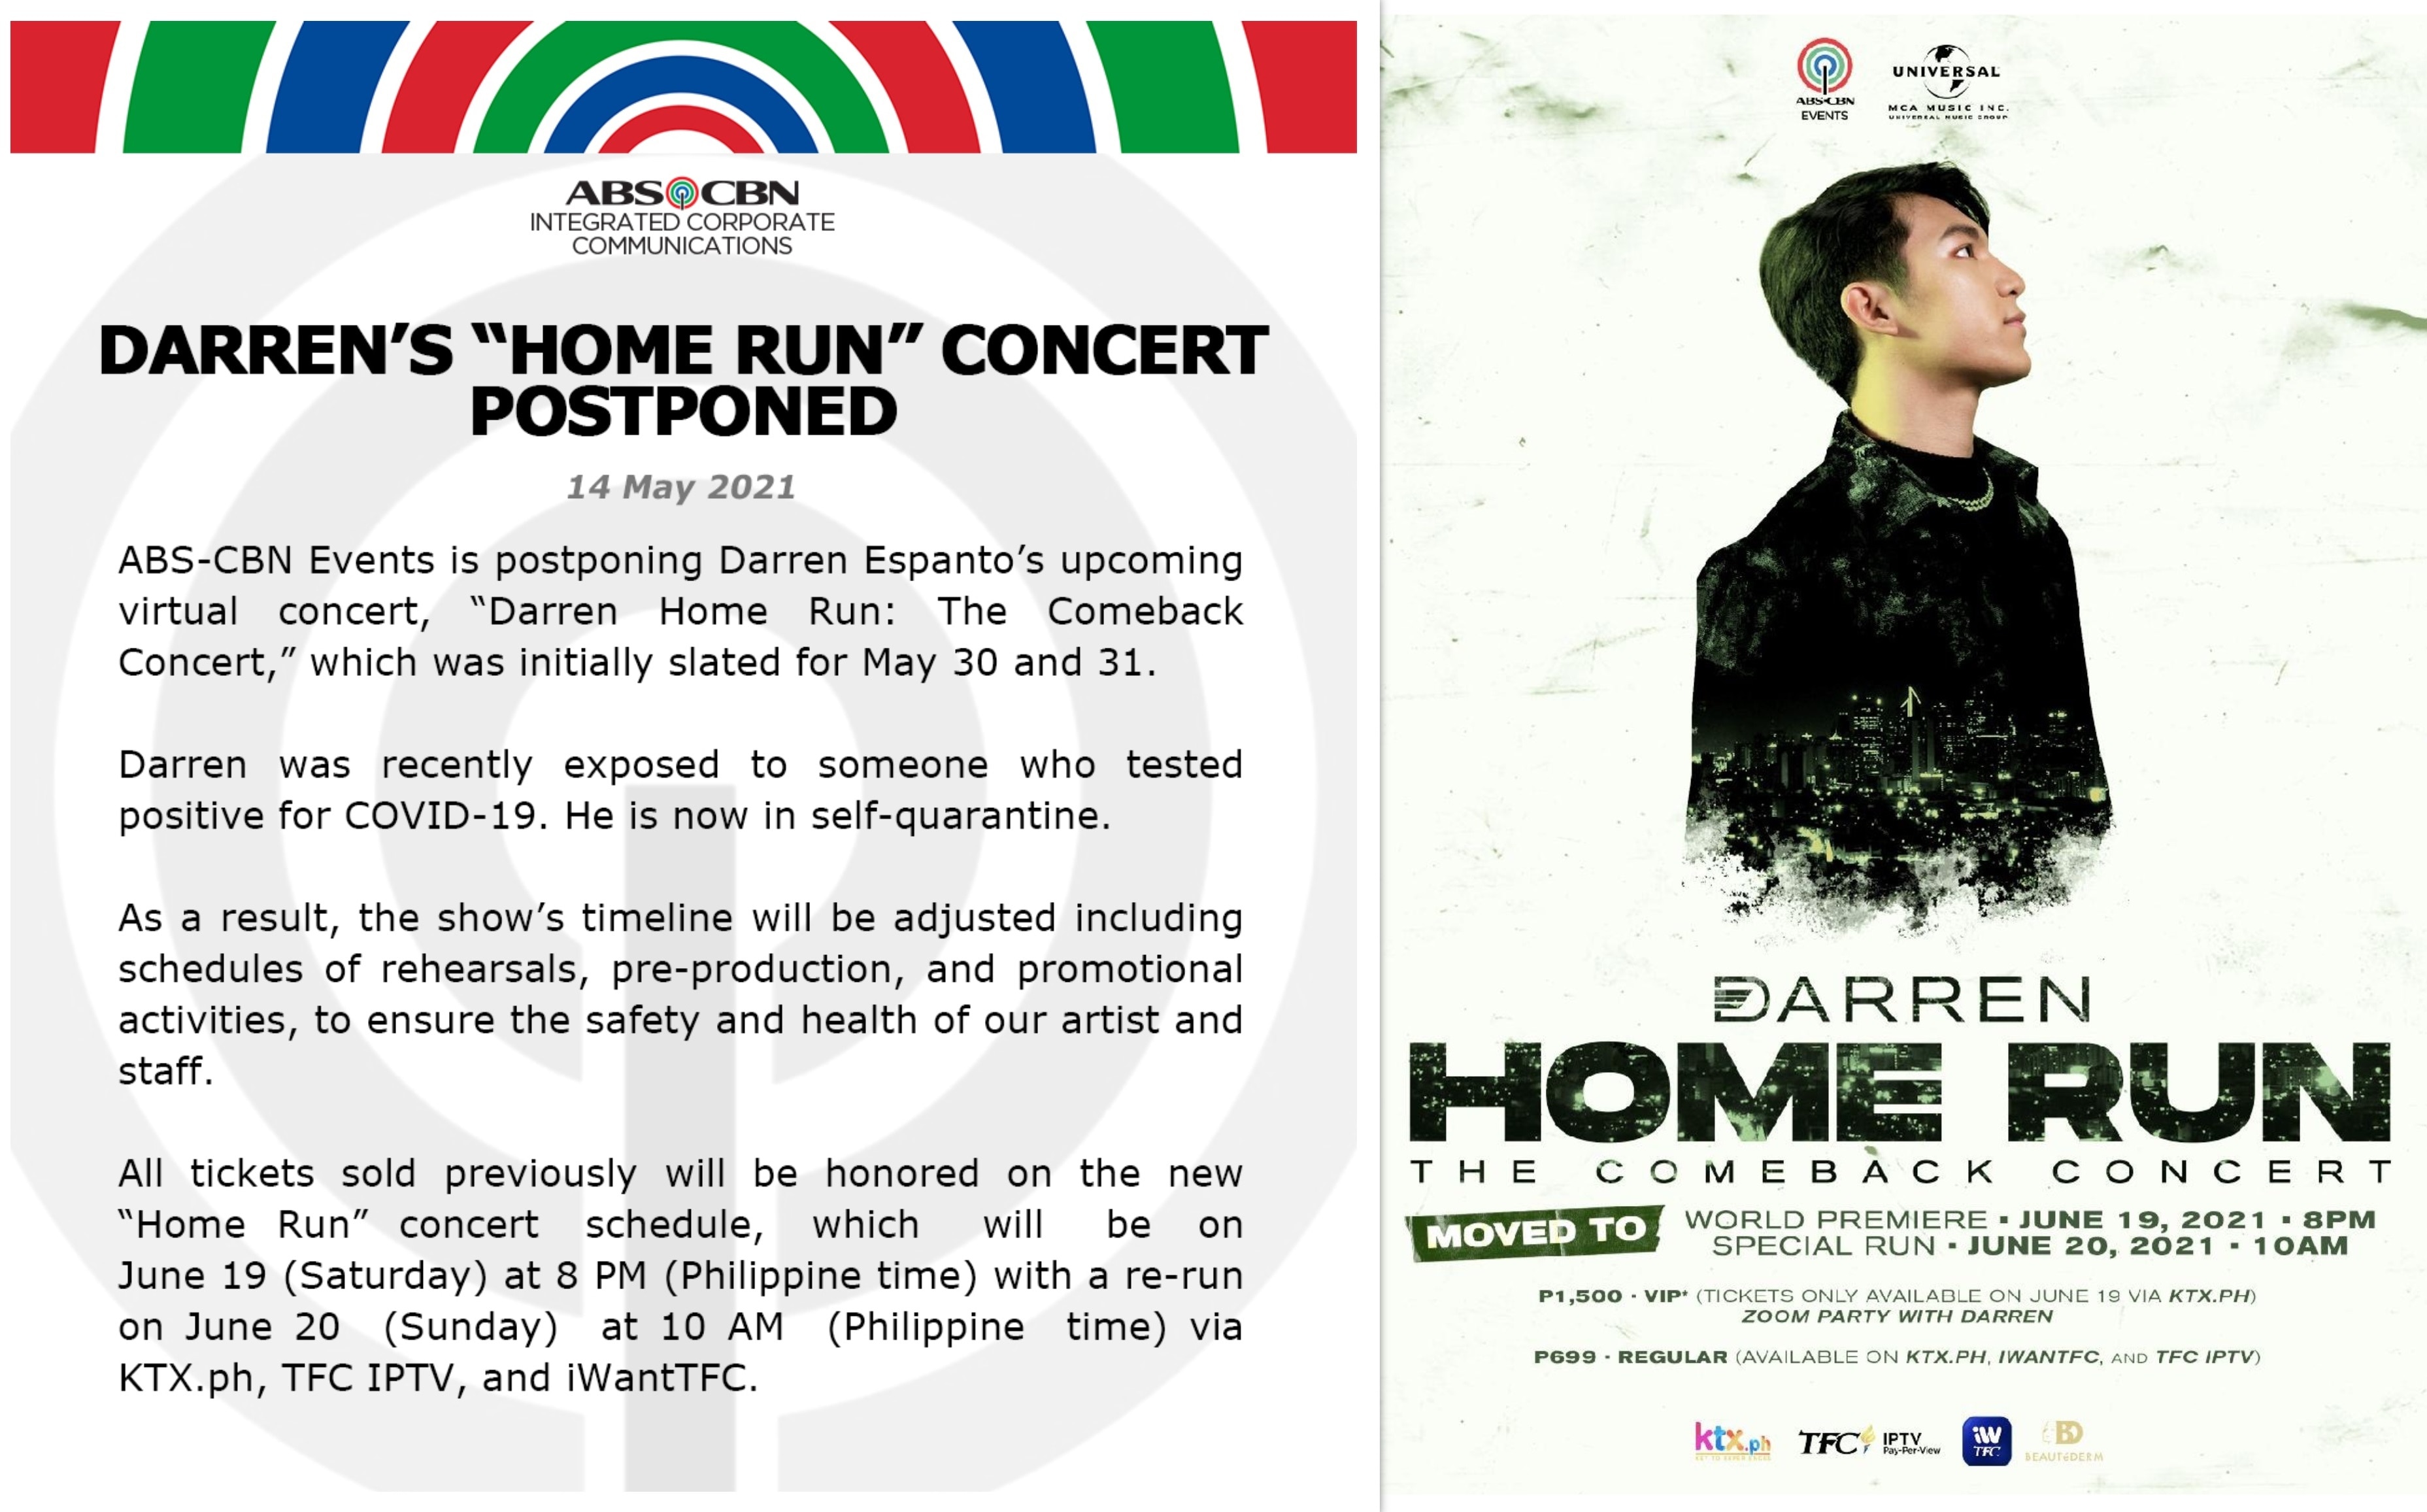 Darren's "Home Run" concert postponed